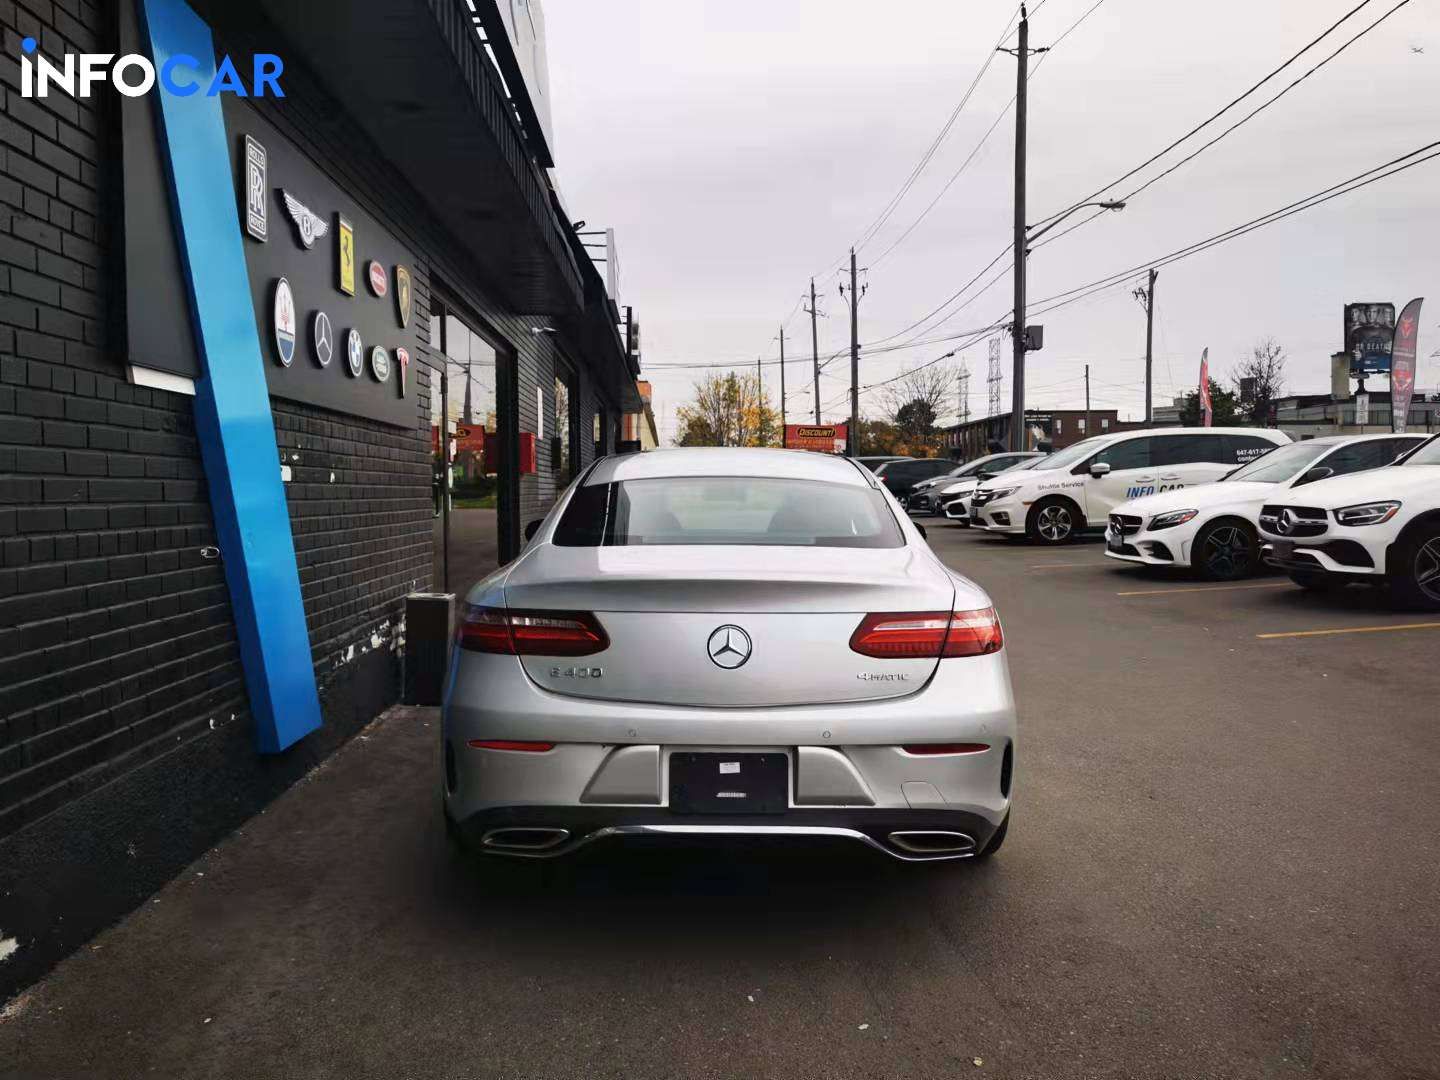 2018 Mercedes-Benz E-Class 400 - INFOCAR - Toronto Auto Trading Platform